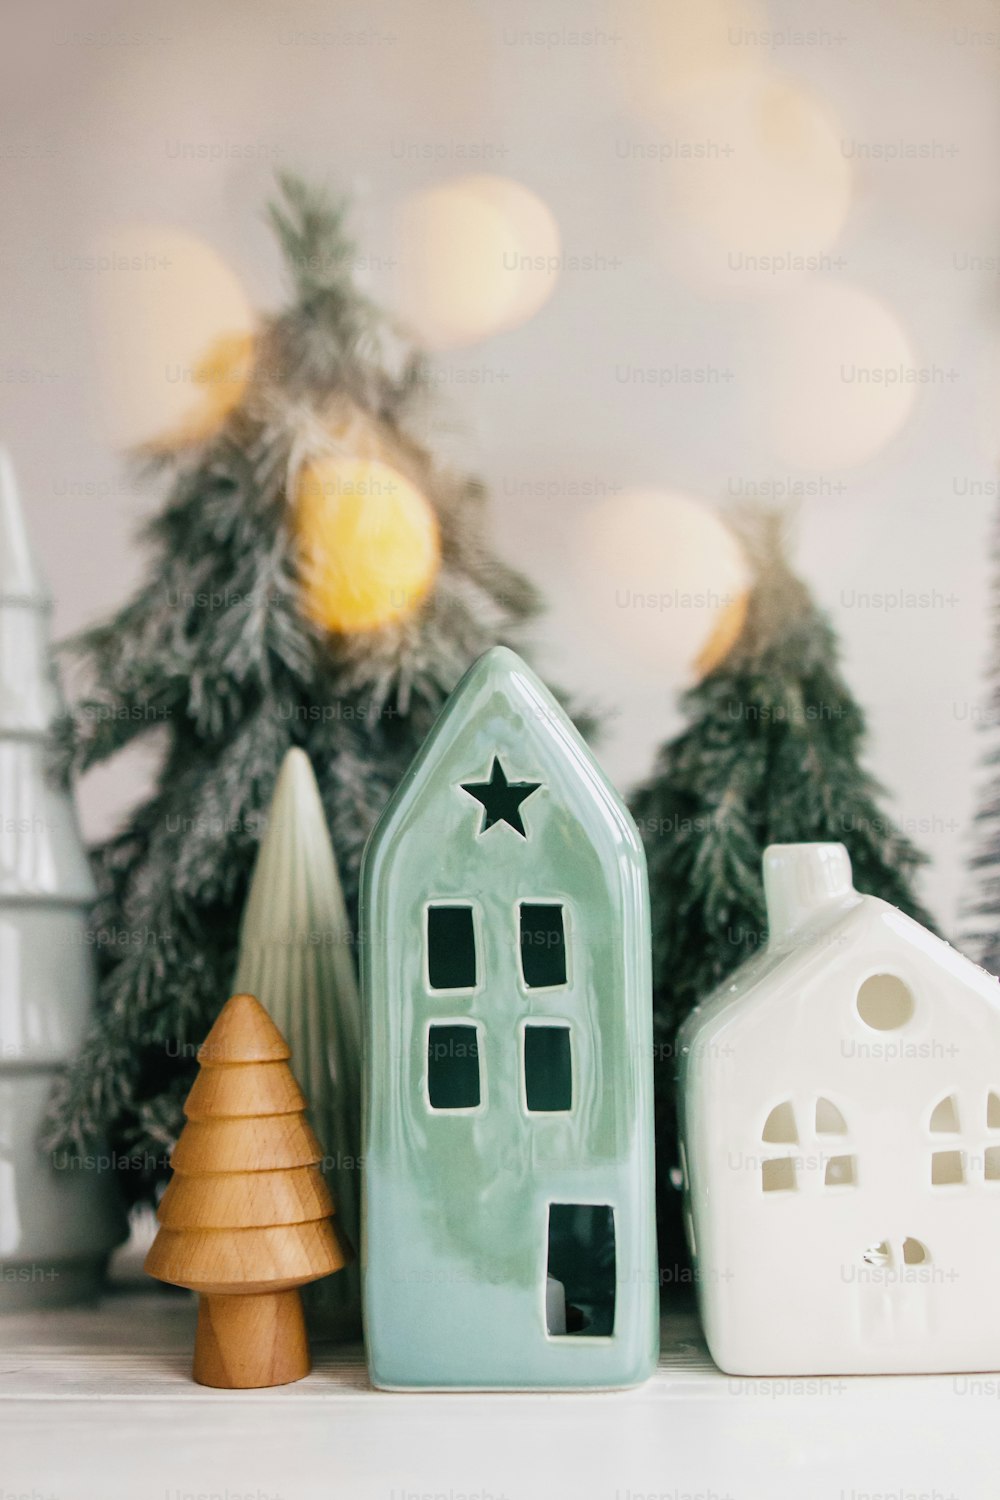 Scène de Noël, village de vacances miniature. Lumières de Noël, petites maisons en céramique, sapins en bois et enneigés sur fond blanc. Décorations modernes et festives sur la table. Joyeux Noël